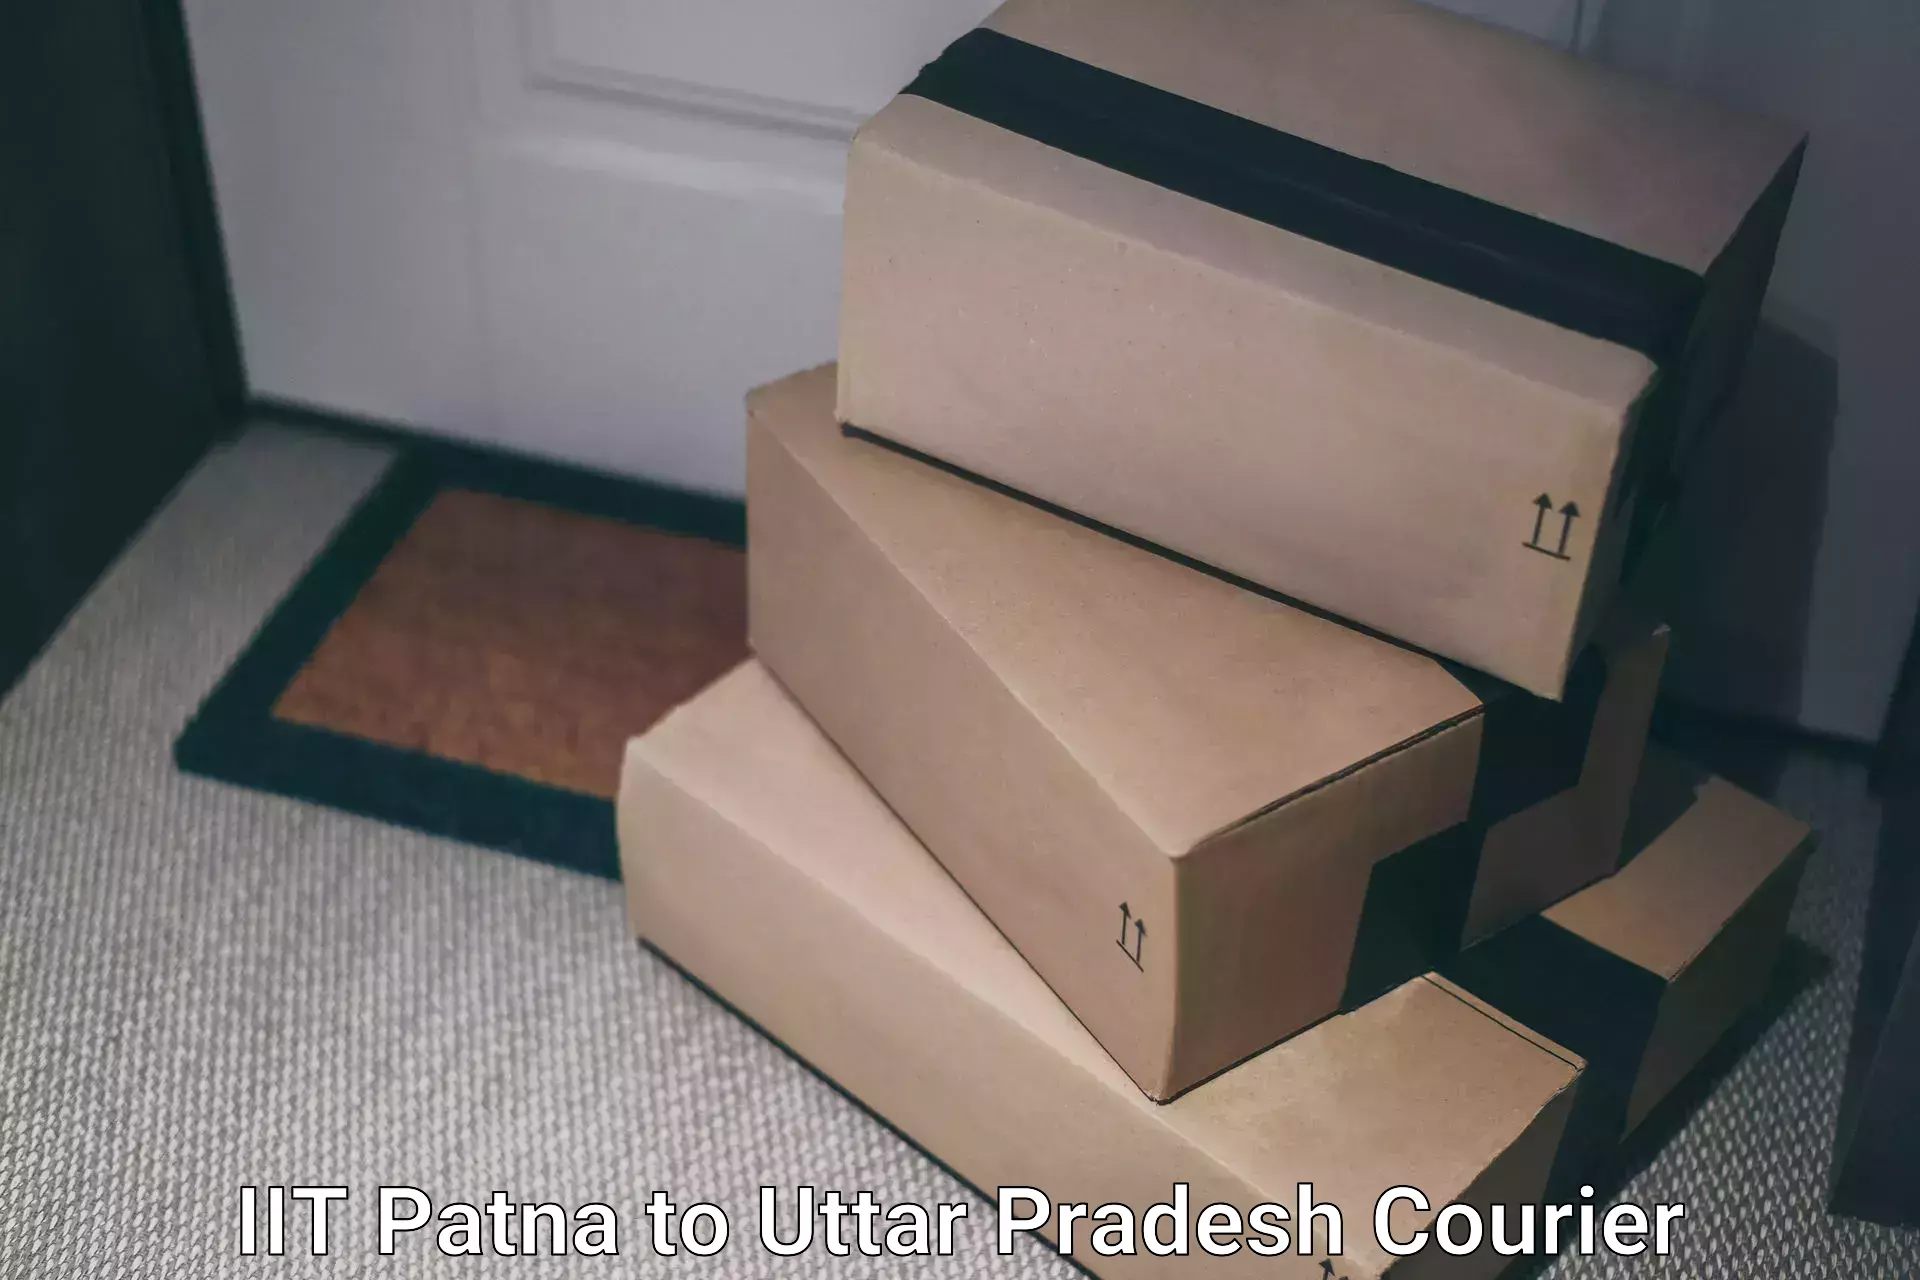 Doorstep delivery service IIT Patna to Manda